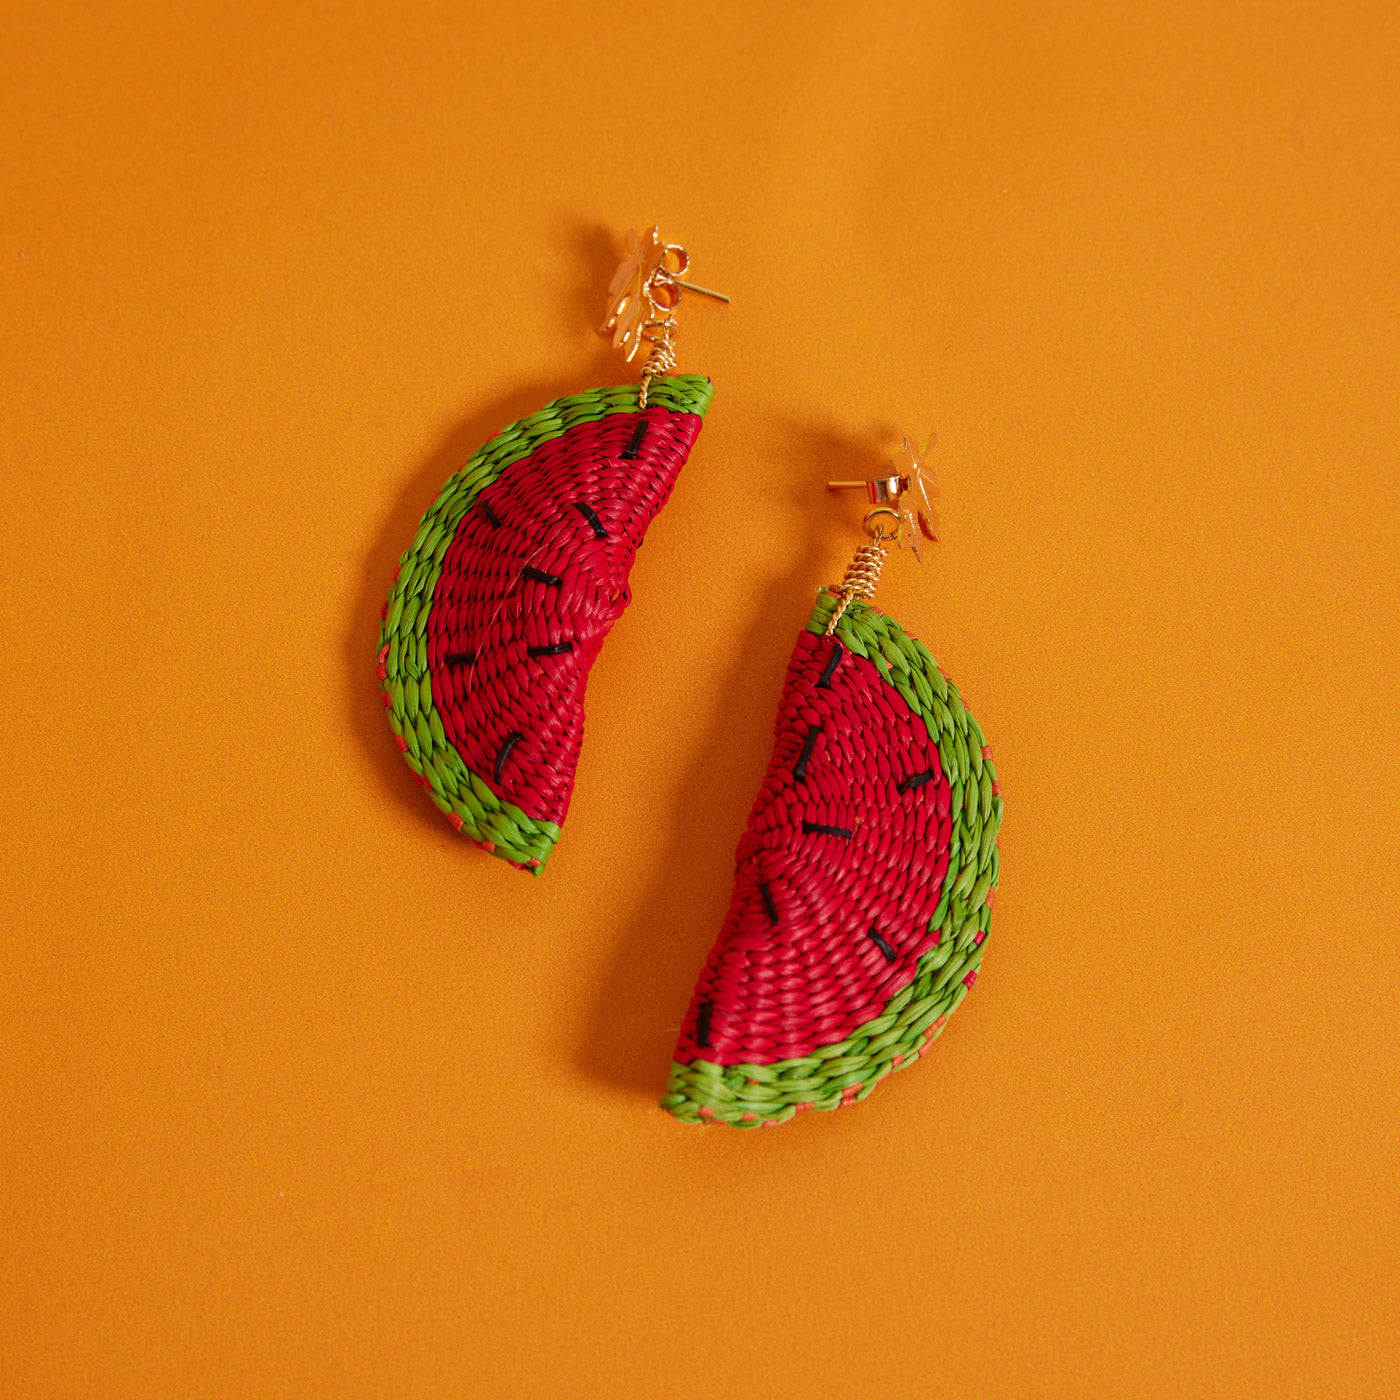 Watermelon earrings from Wicker Darling on an orange background